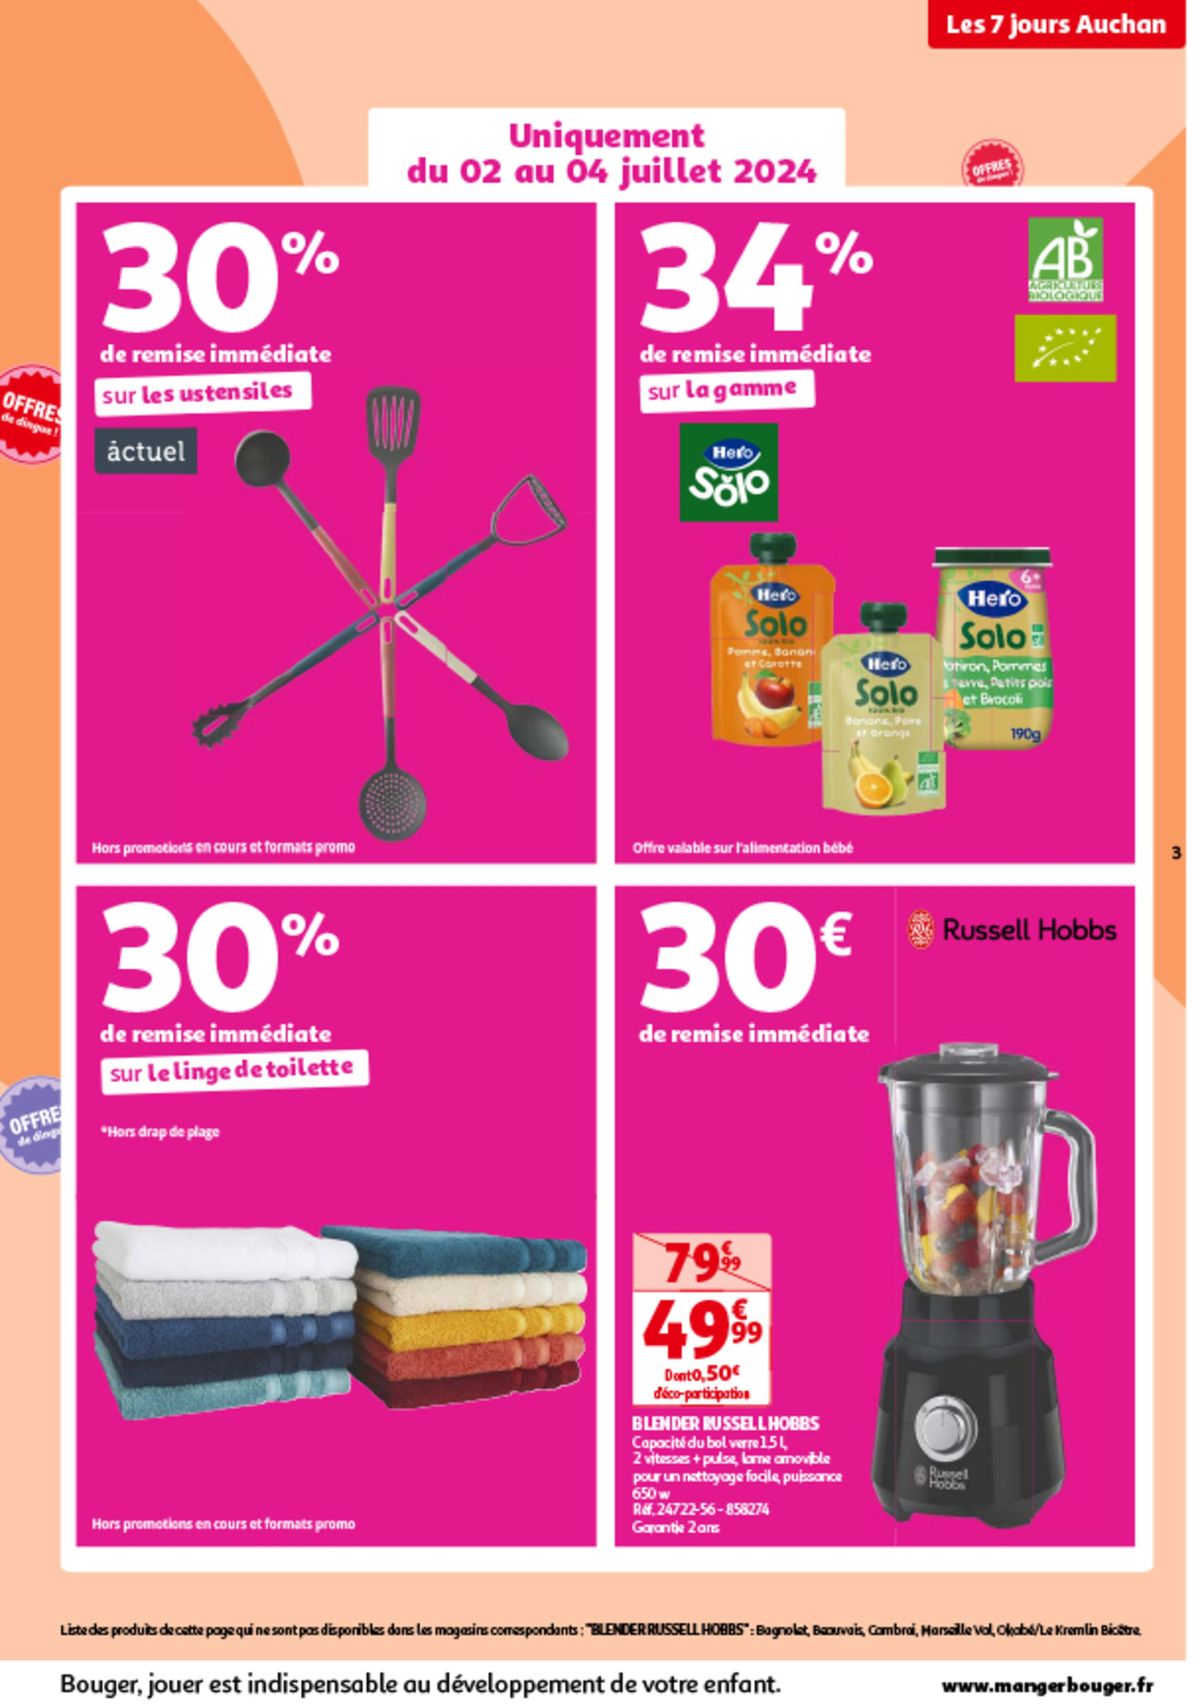 Catalogue Les 7 jours Auchan, c'est maintenant !, page 00003